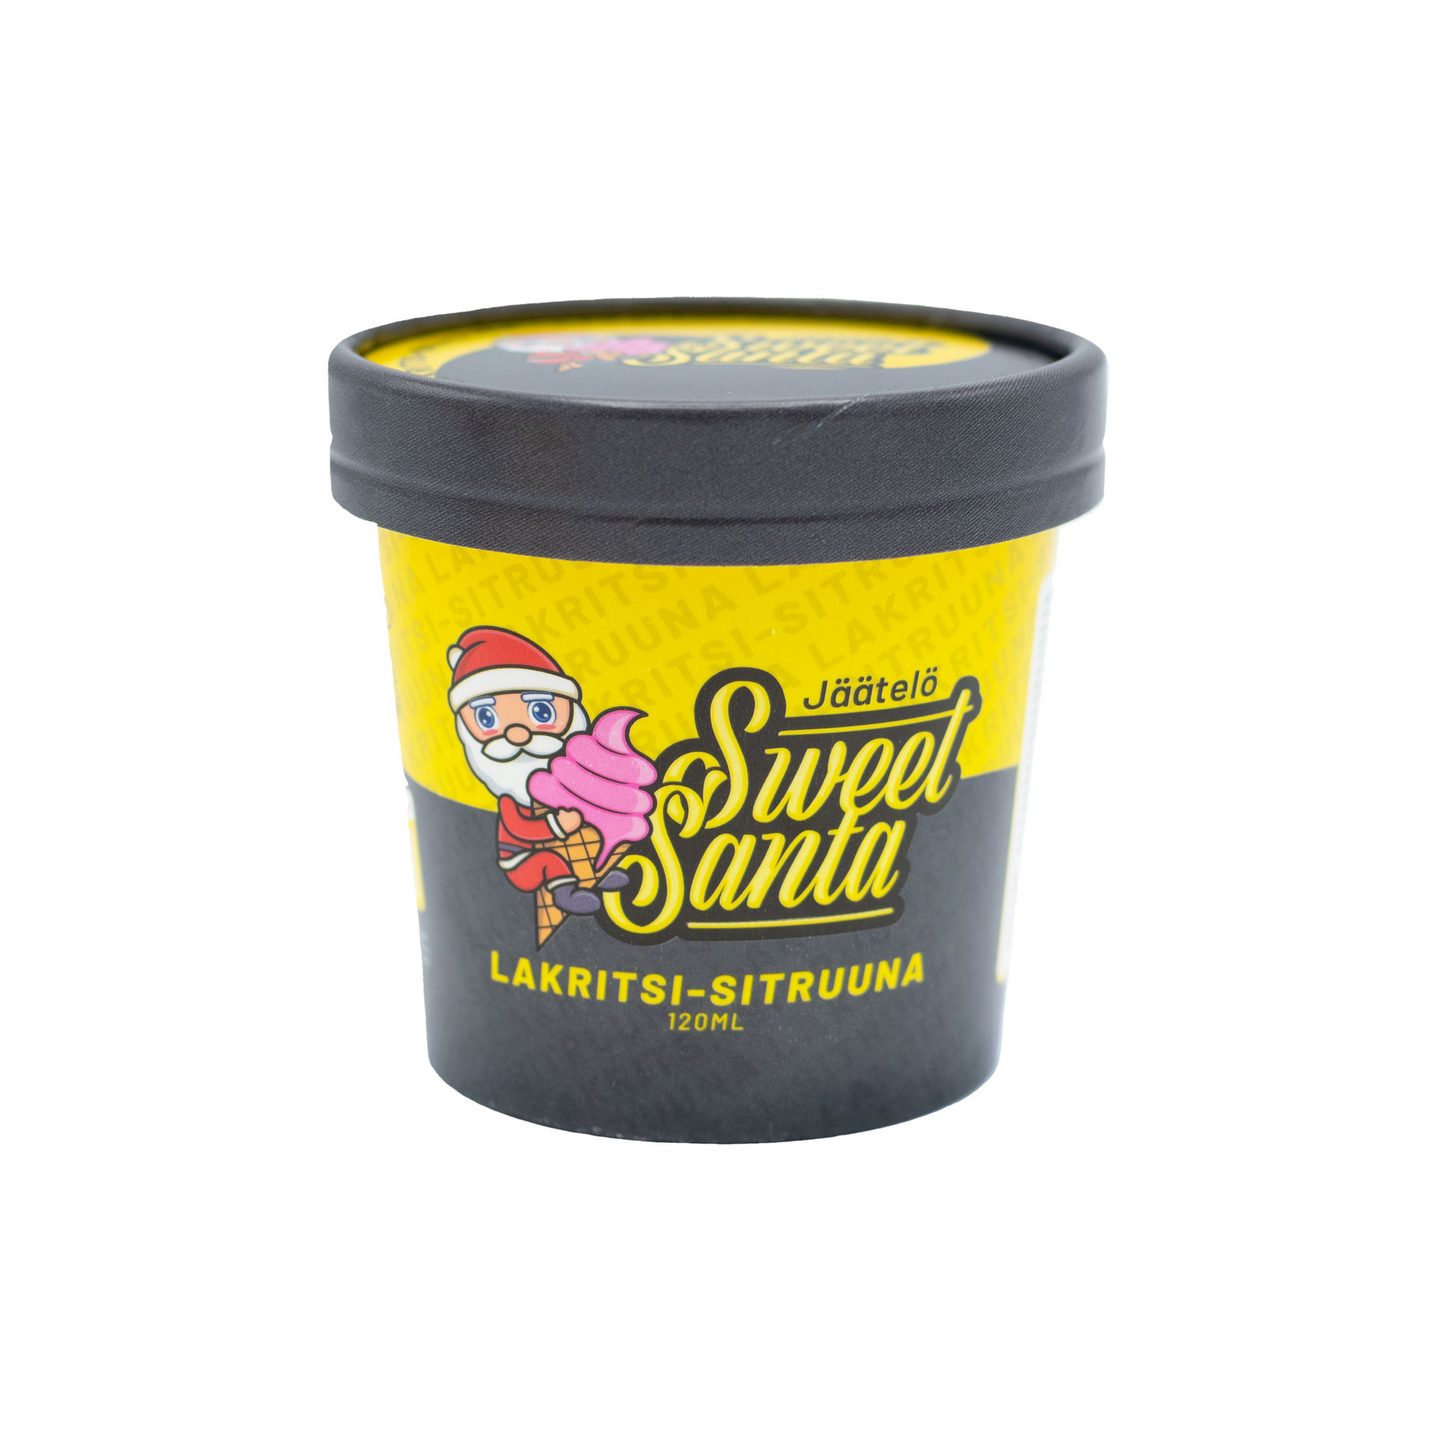 Sweet Santa lakritsi-sitruunajäätelö 120ml laktoositon